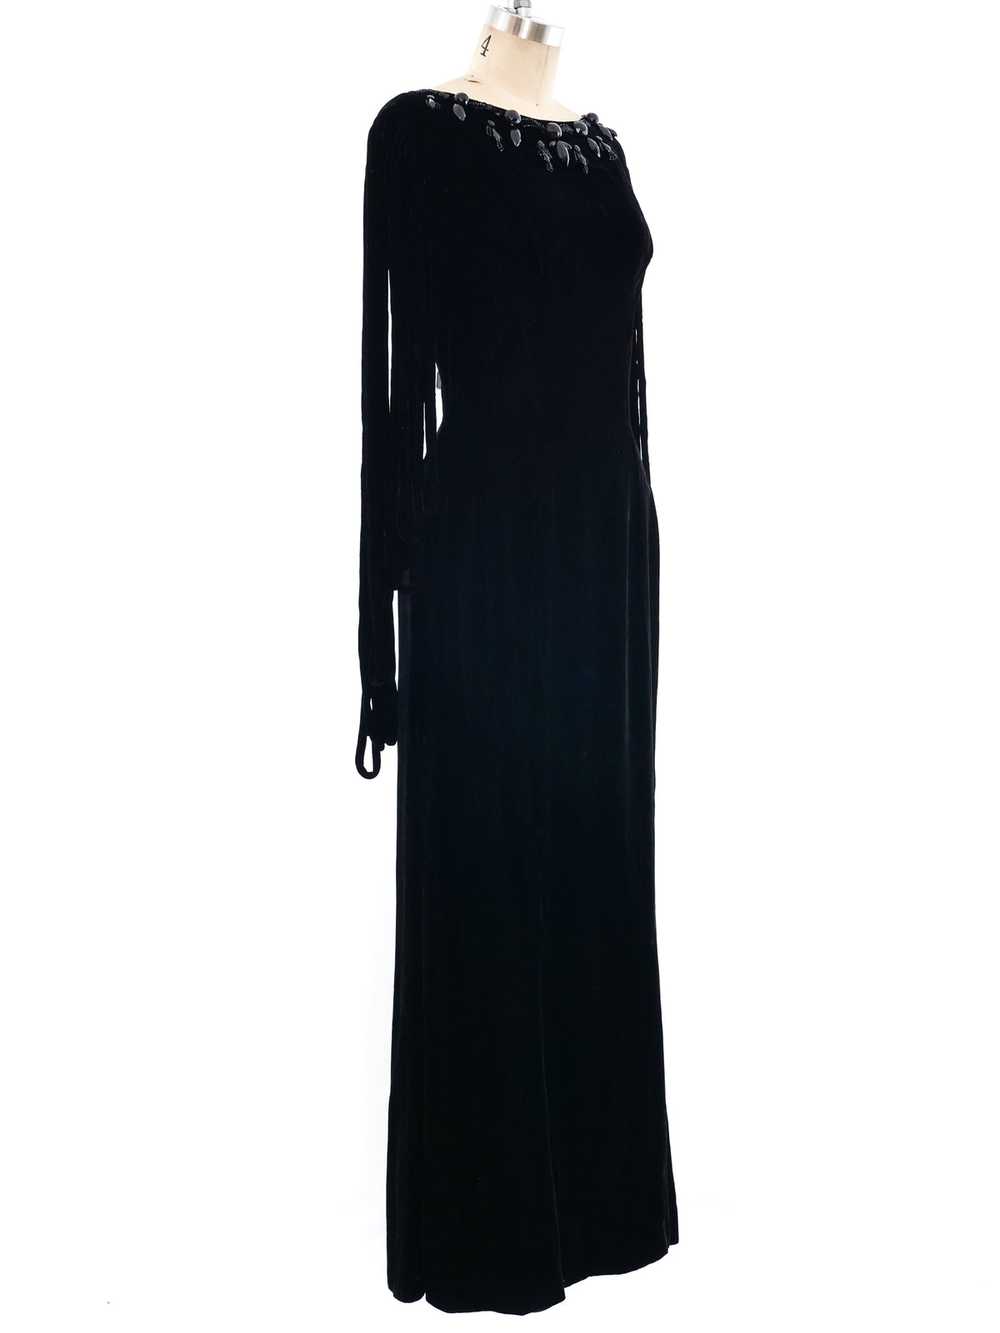 Fringed Velvet Dress - image 3